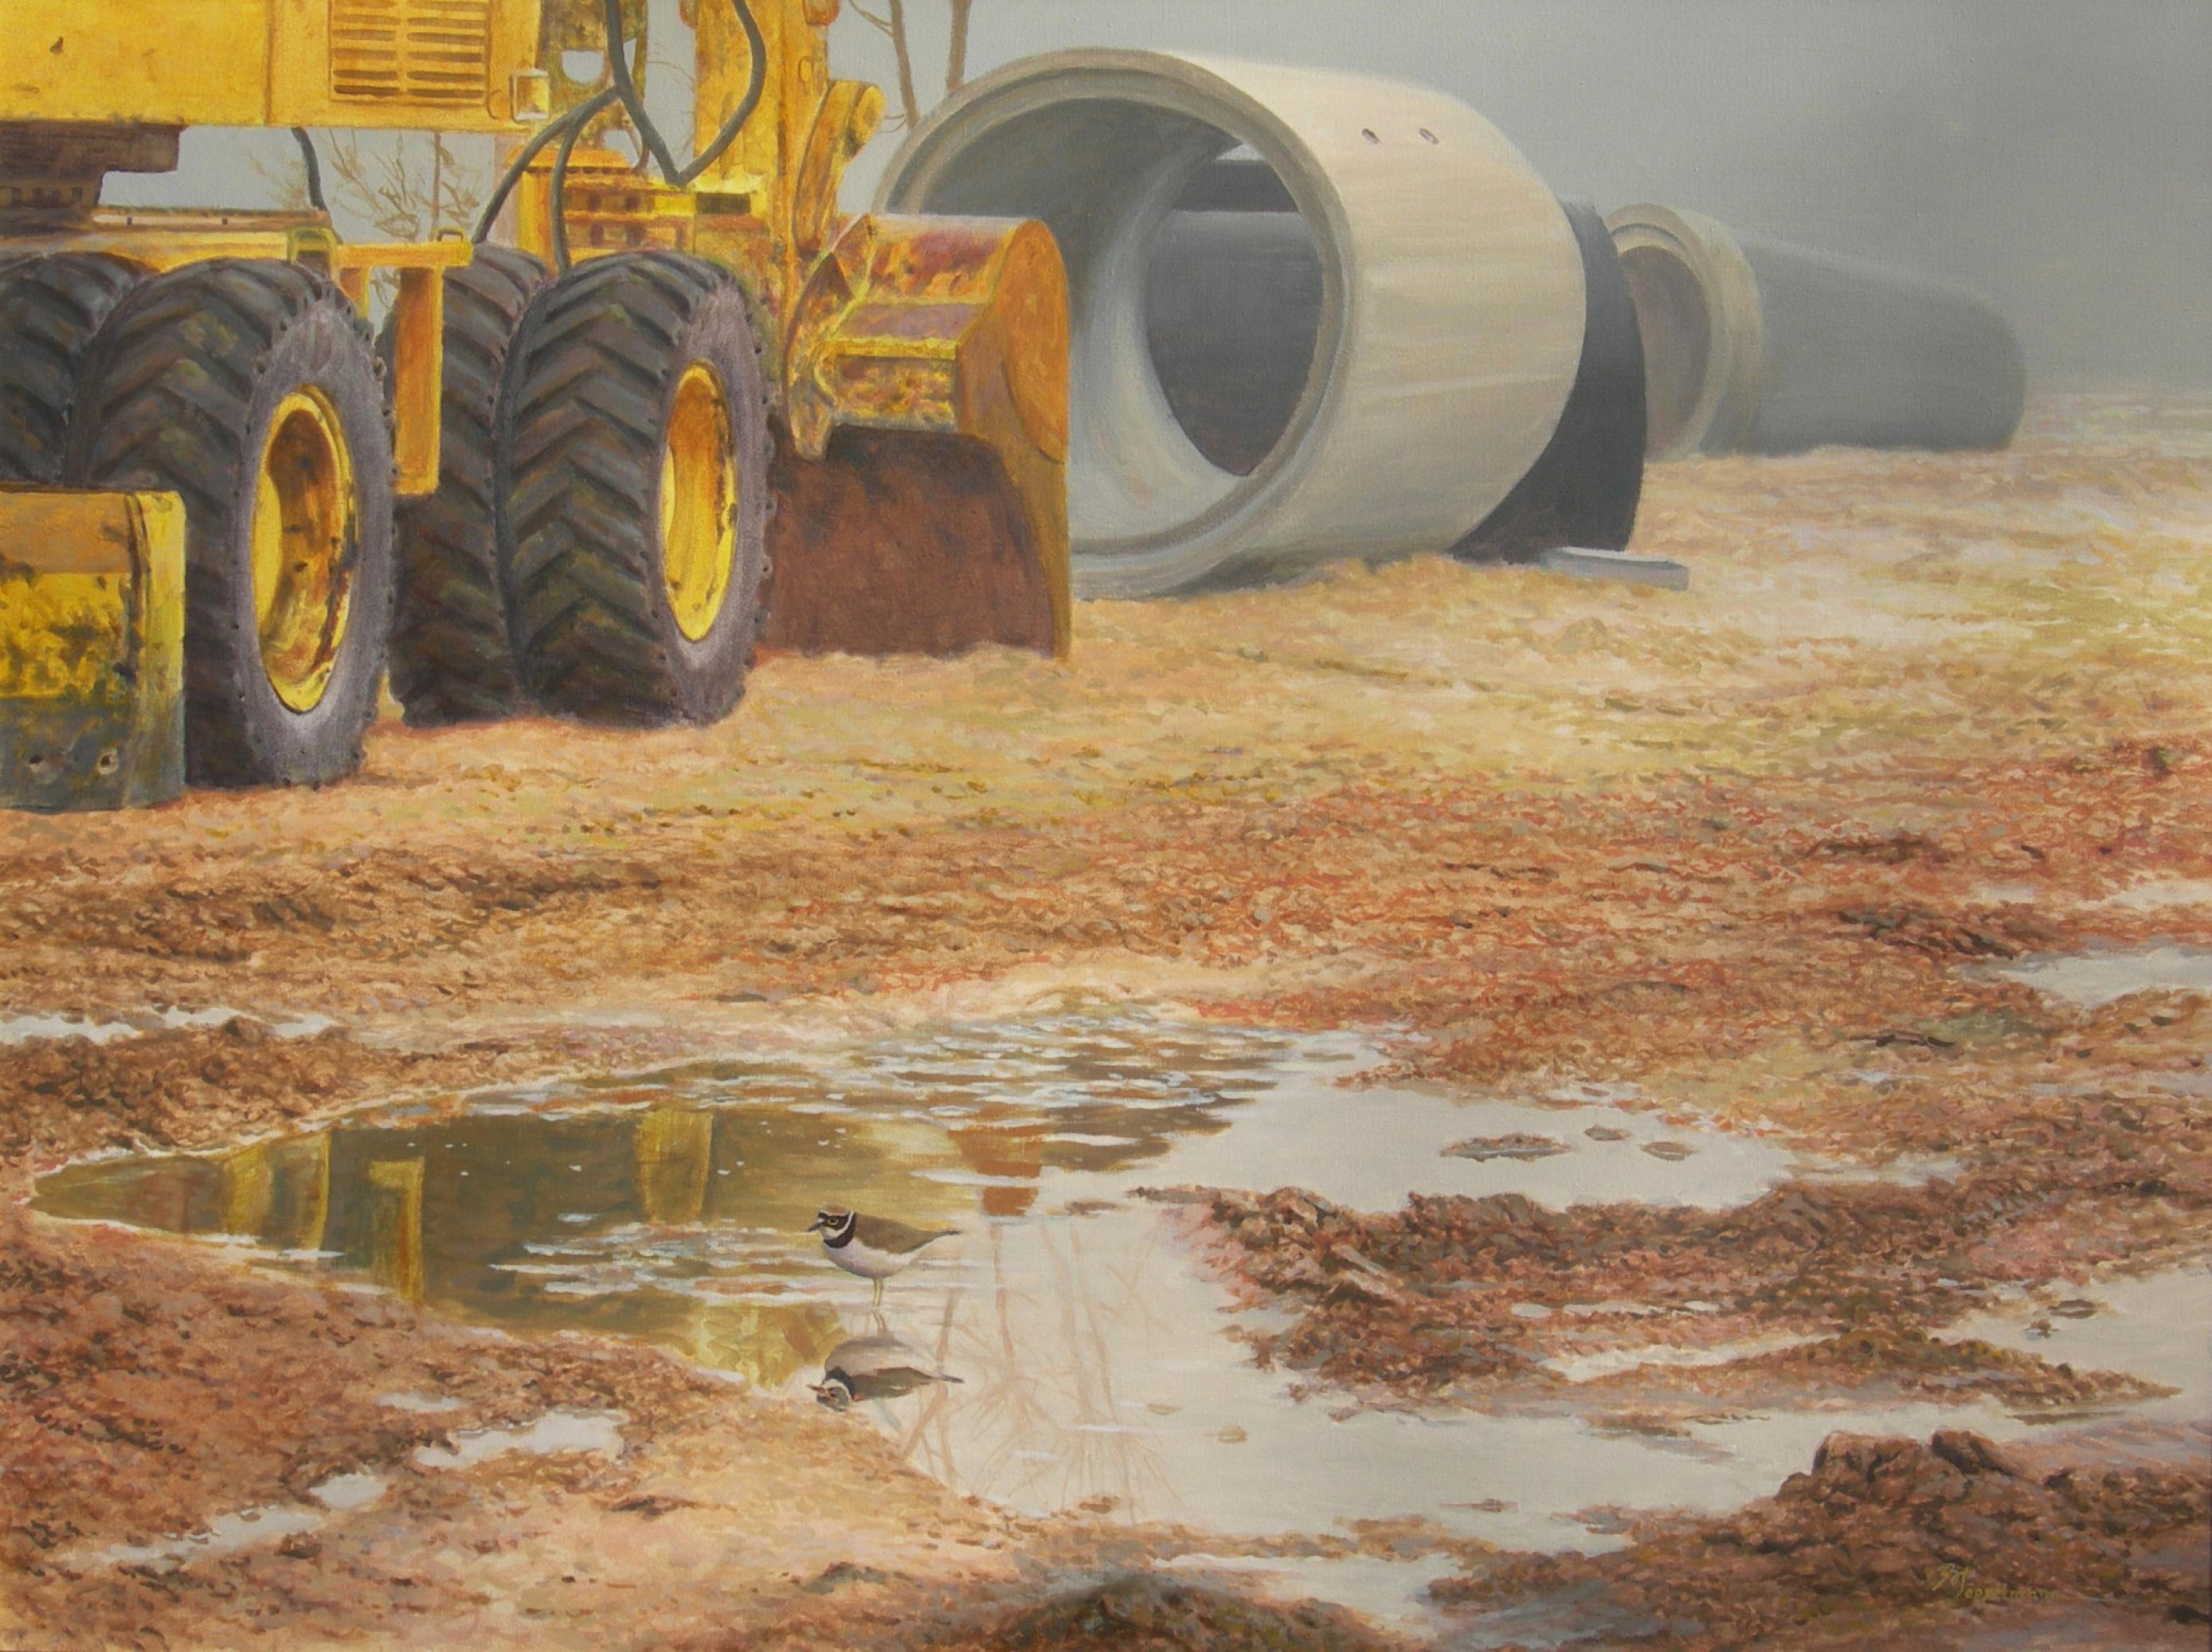 Ein Gemälde zeigt einen Flußregenpfeifer, dessen Lebensraum durch einen Bagger zerstört wurde